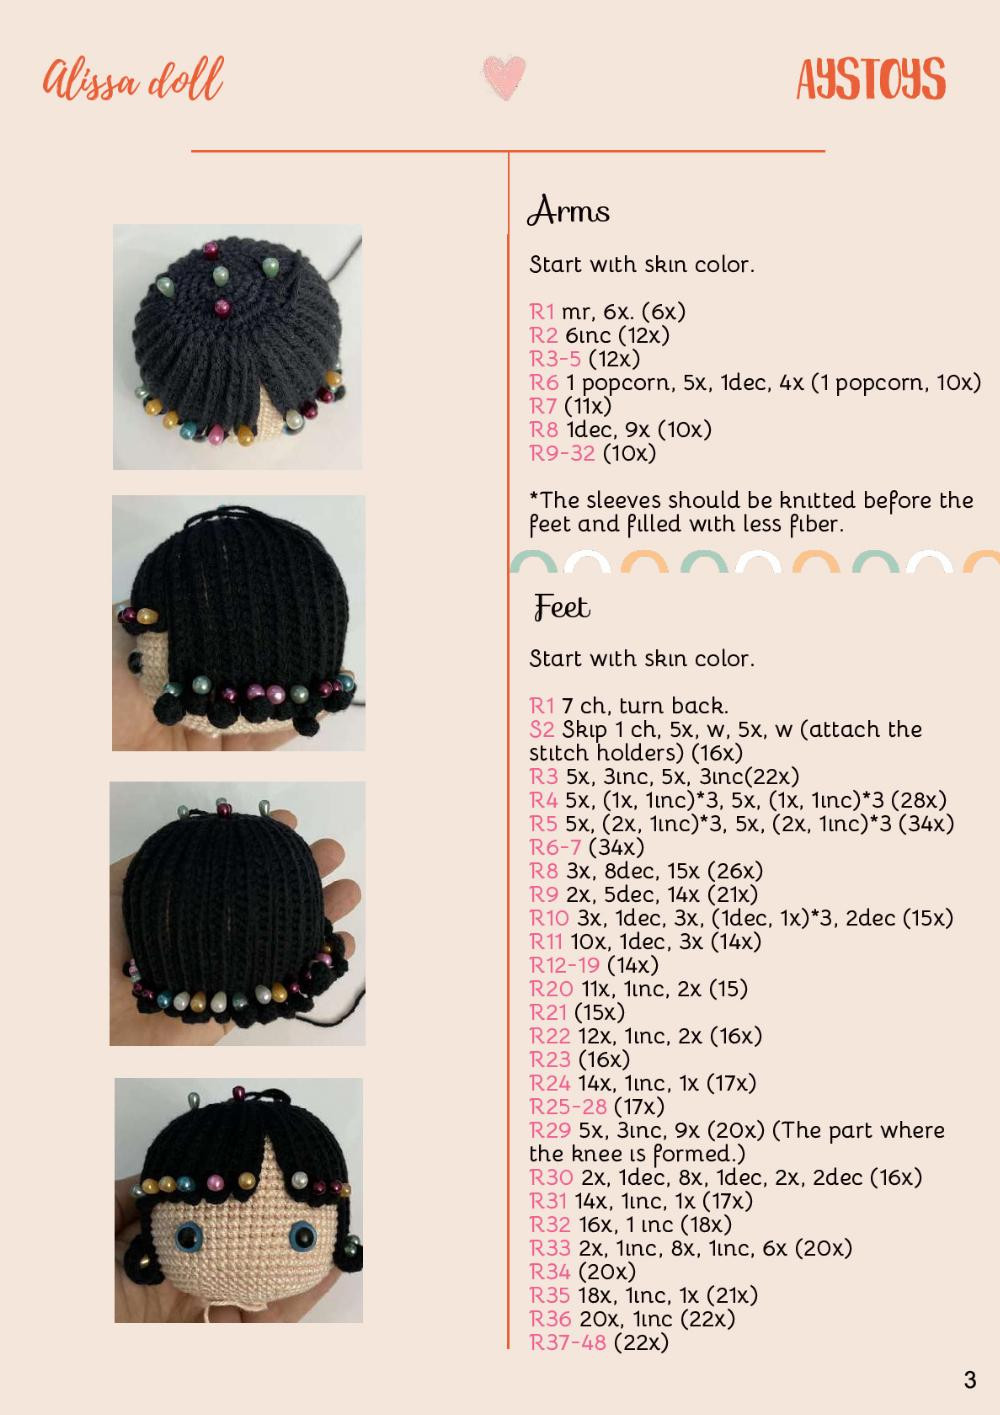 AYSTOYS Alissa doll crochet pattern